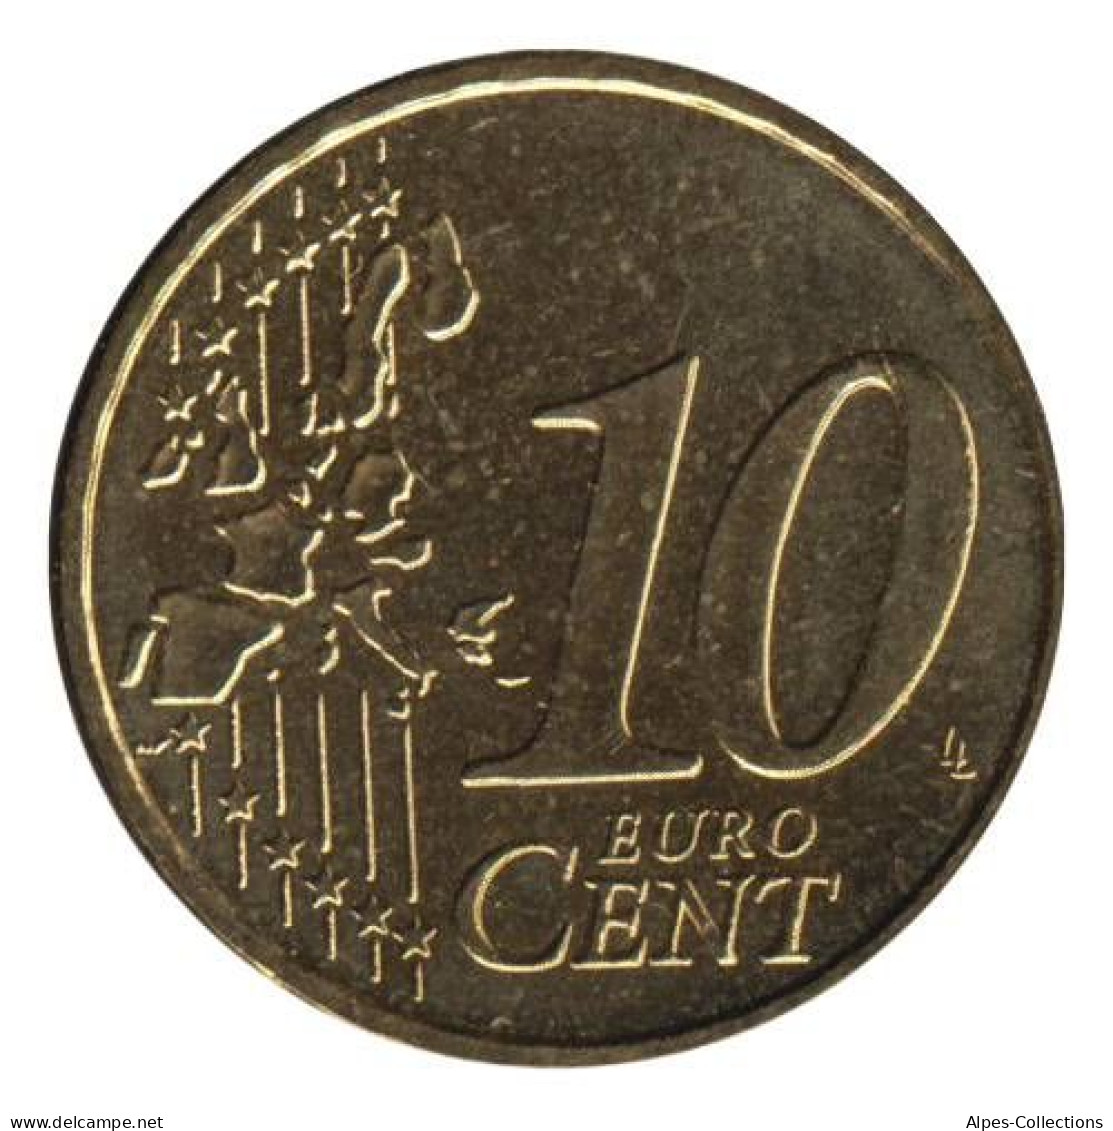 FR01003.1 - FRANCE - 10 Cents - 2003 - France